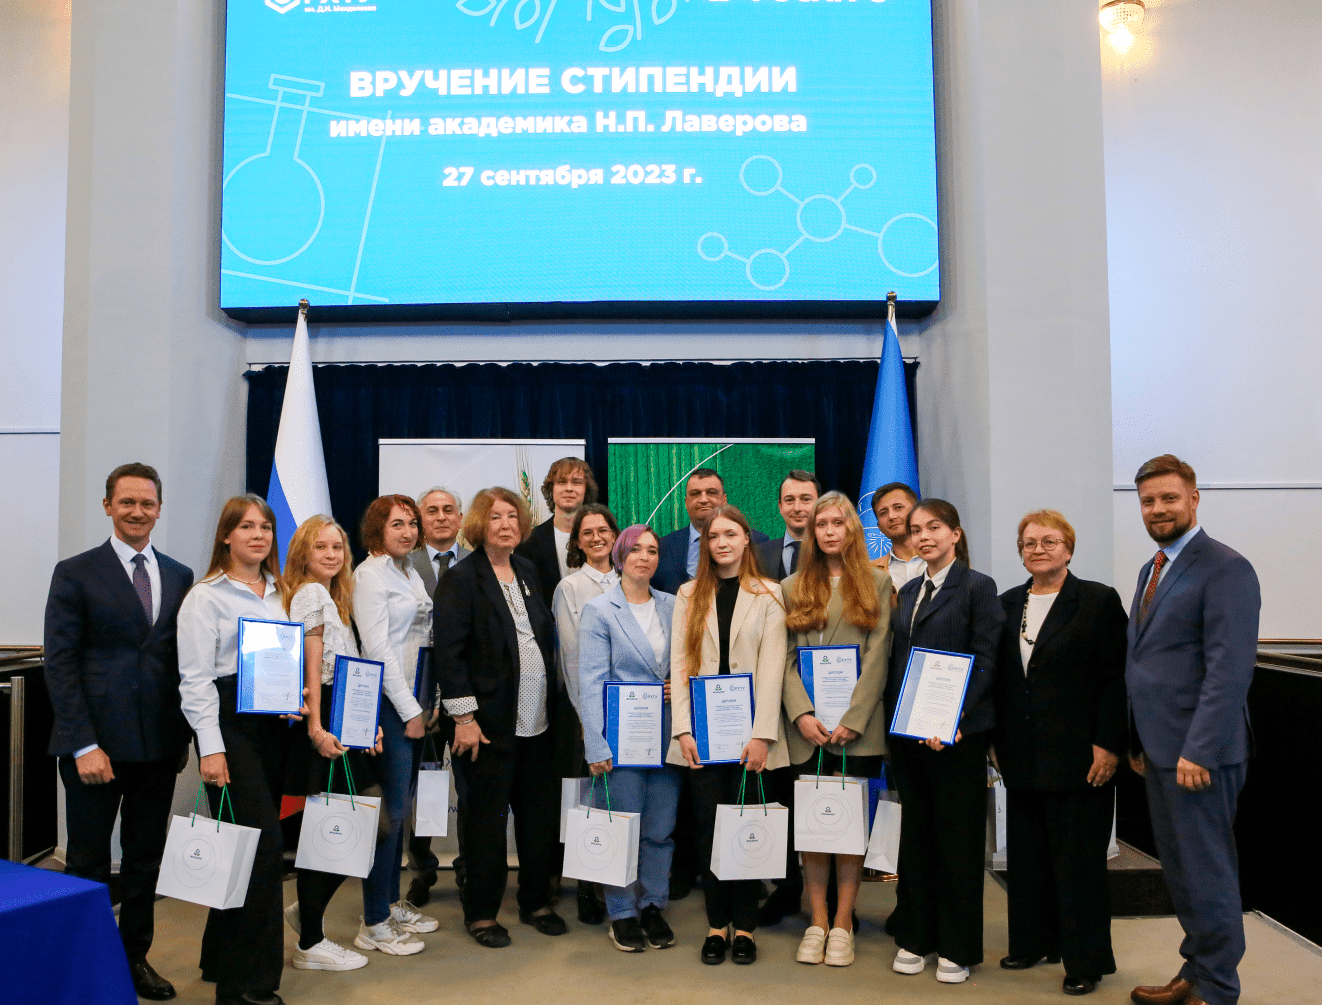 Победители четвертого конкурса стипендий им. Лавёрова